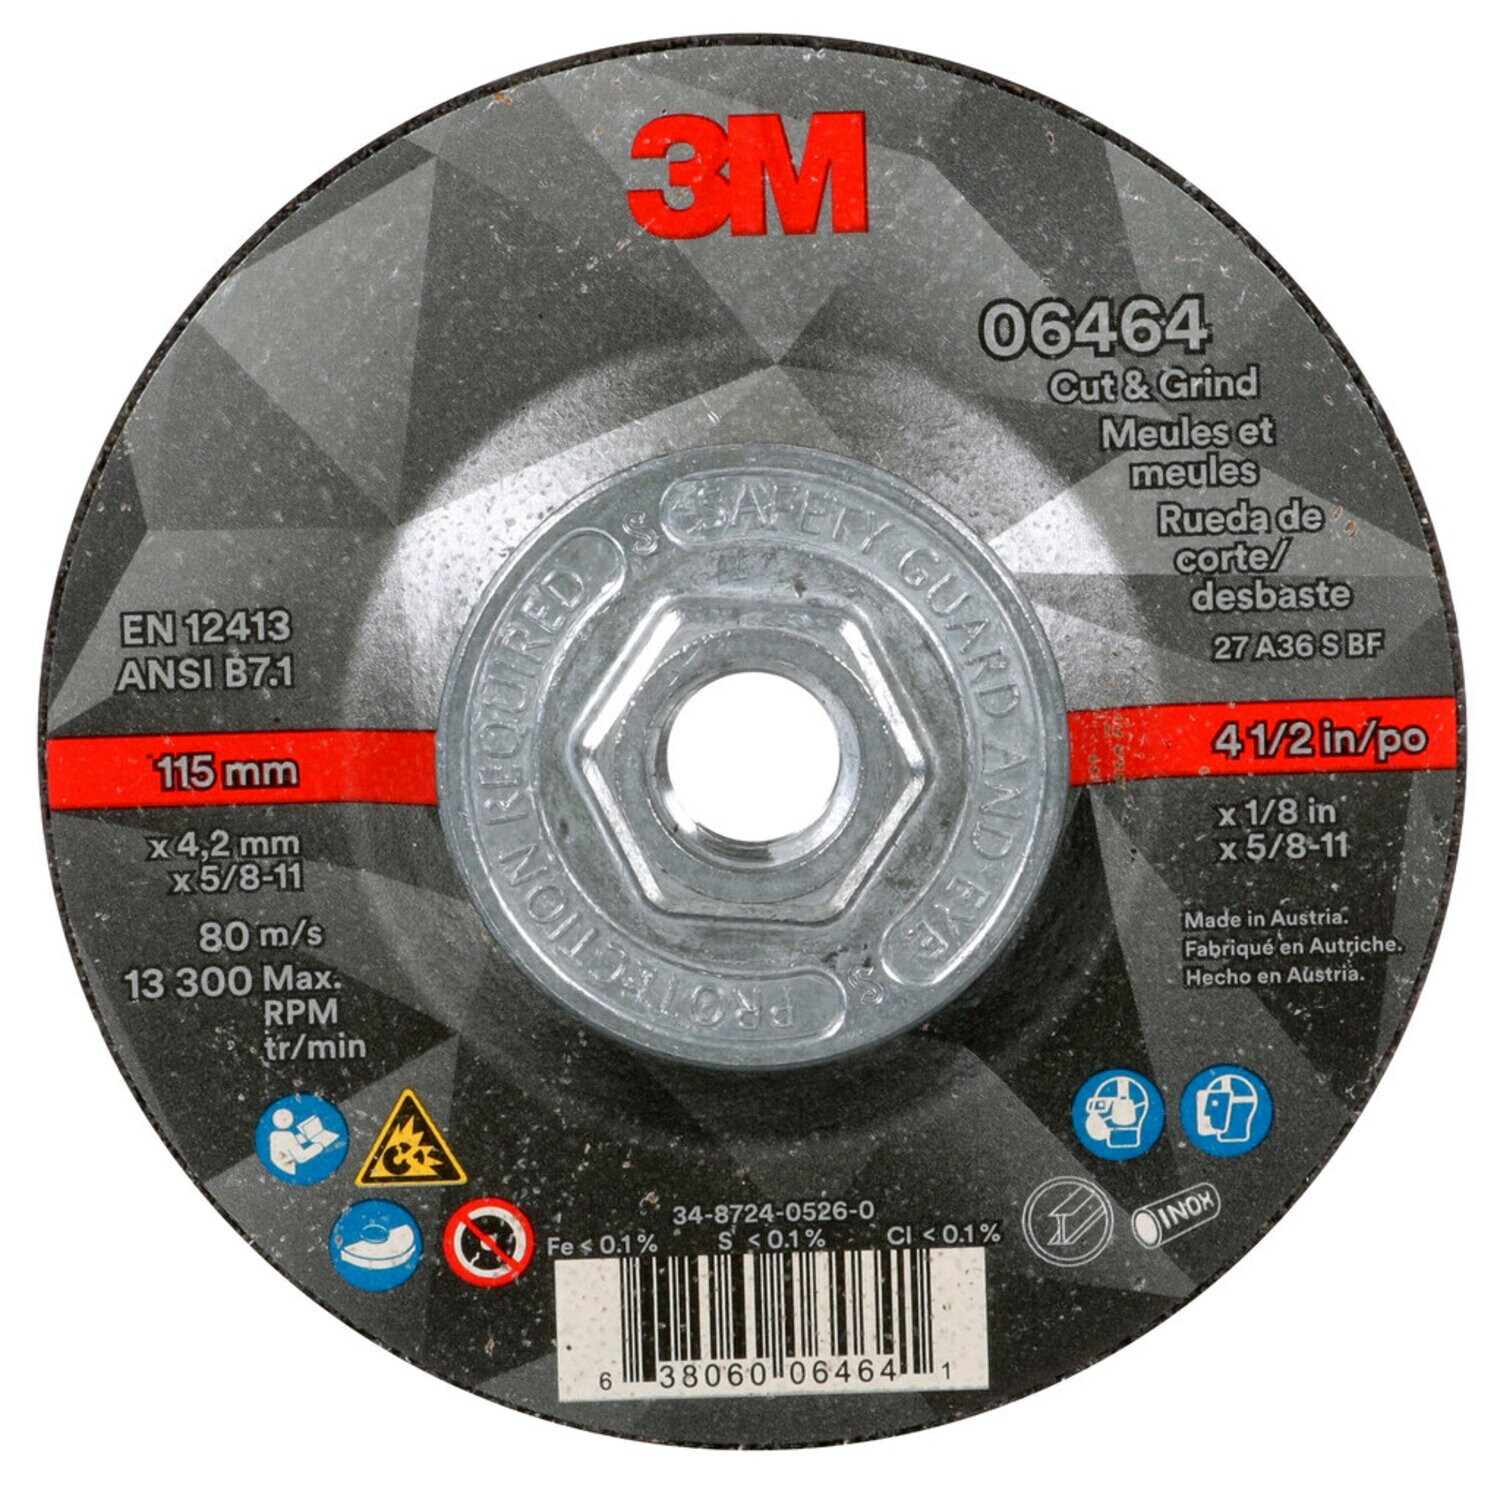 7100245014 - 3M Cut & Grind Wheel, 06464, T27, 4-1/2 in x 1/8 in x 5/8 in-11, Quick
Change, 10/Carton, 20 ea/Case